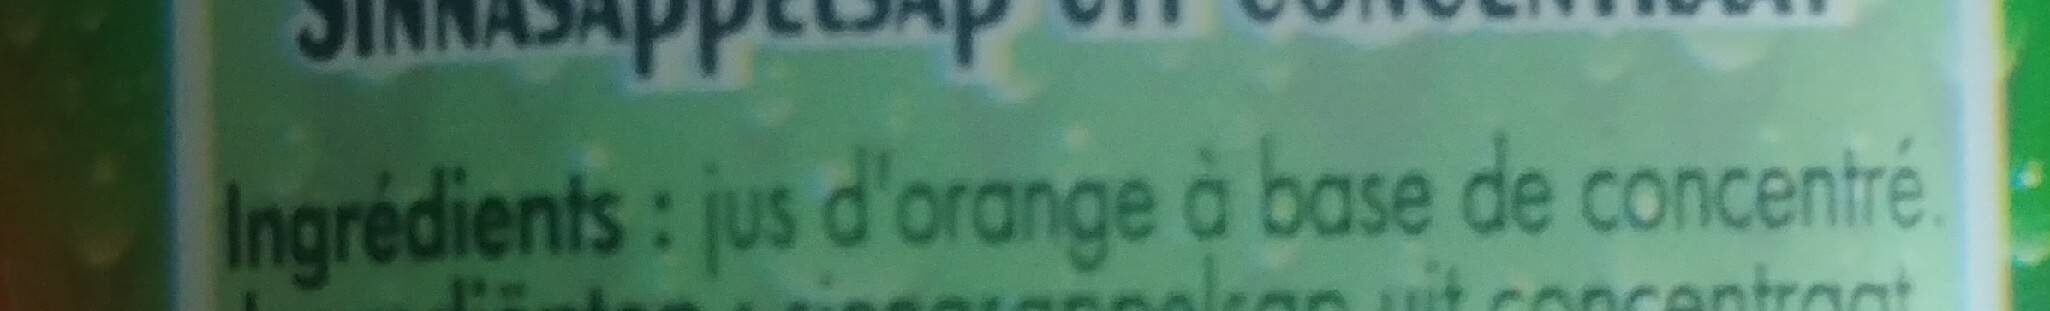 Jus d'orange à base de concentré - Ingredients - fr